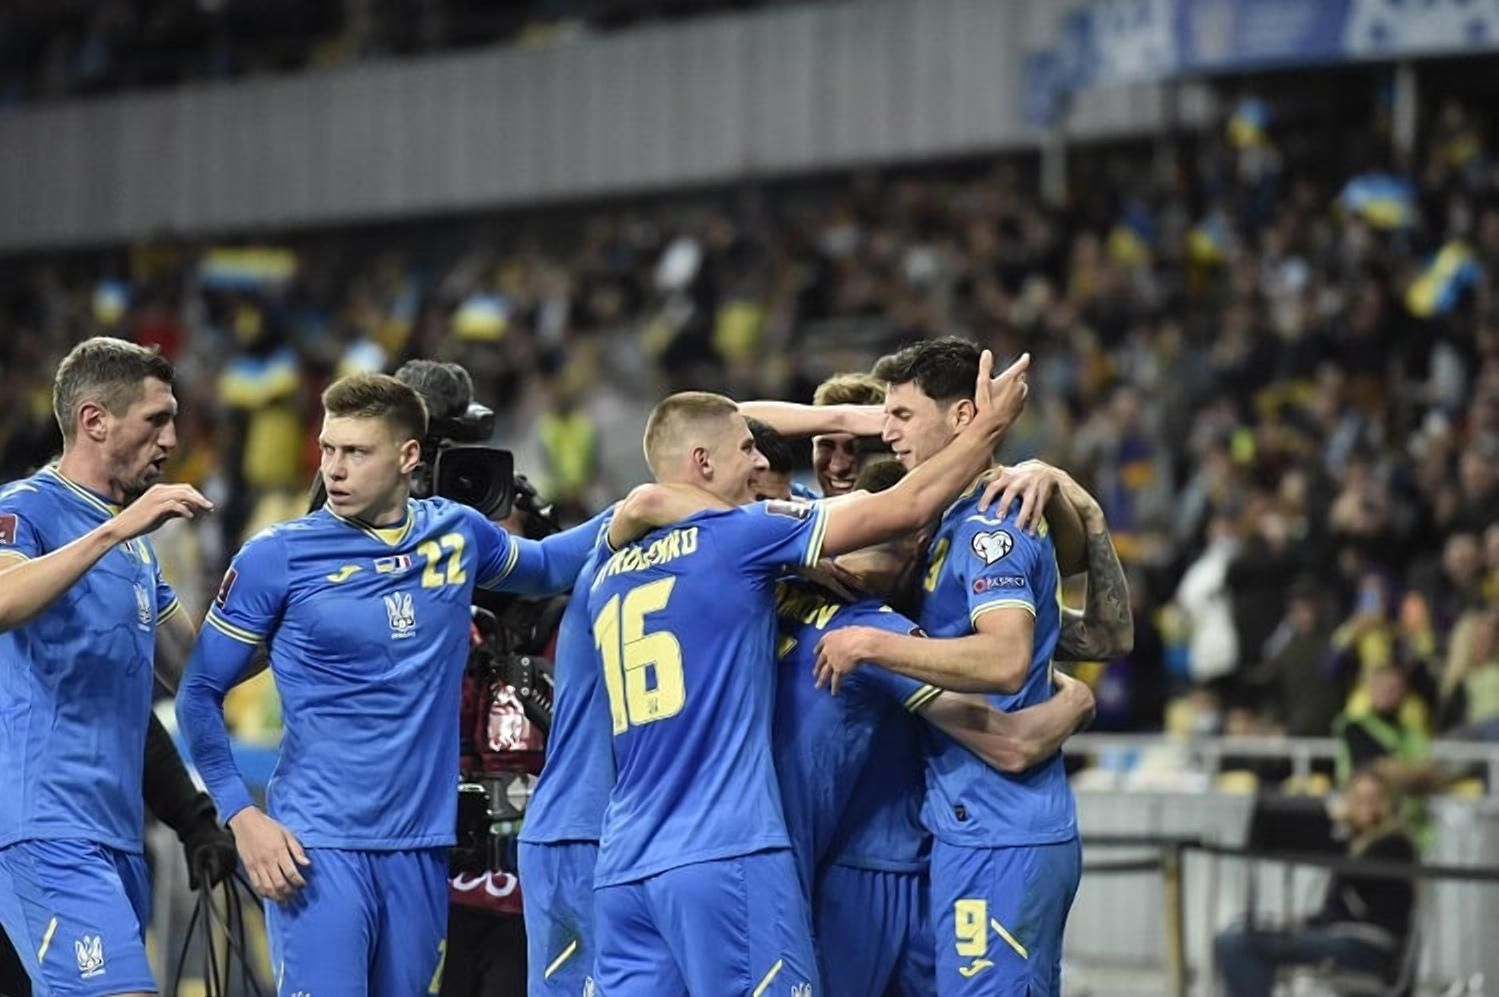 Обновленный рейтинг ФИФА: Украине не удалось войти в число лучших 25 команд мира - Сборная